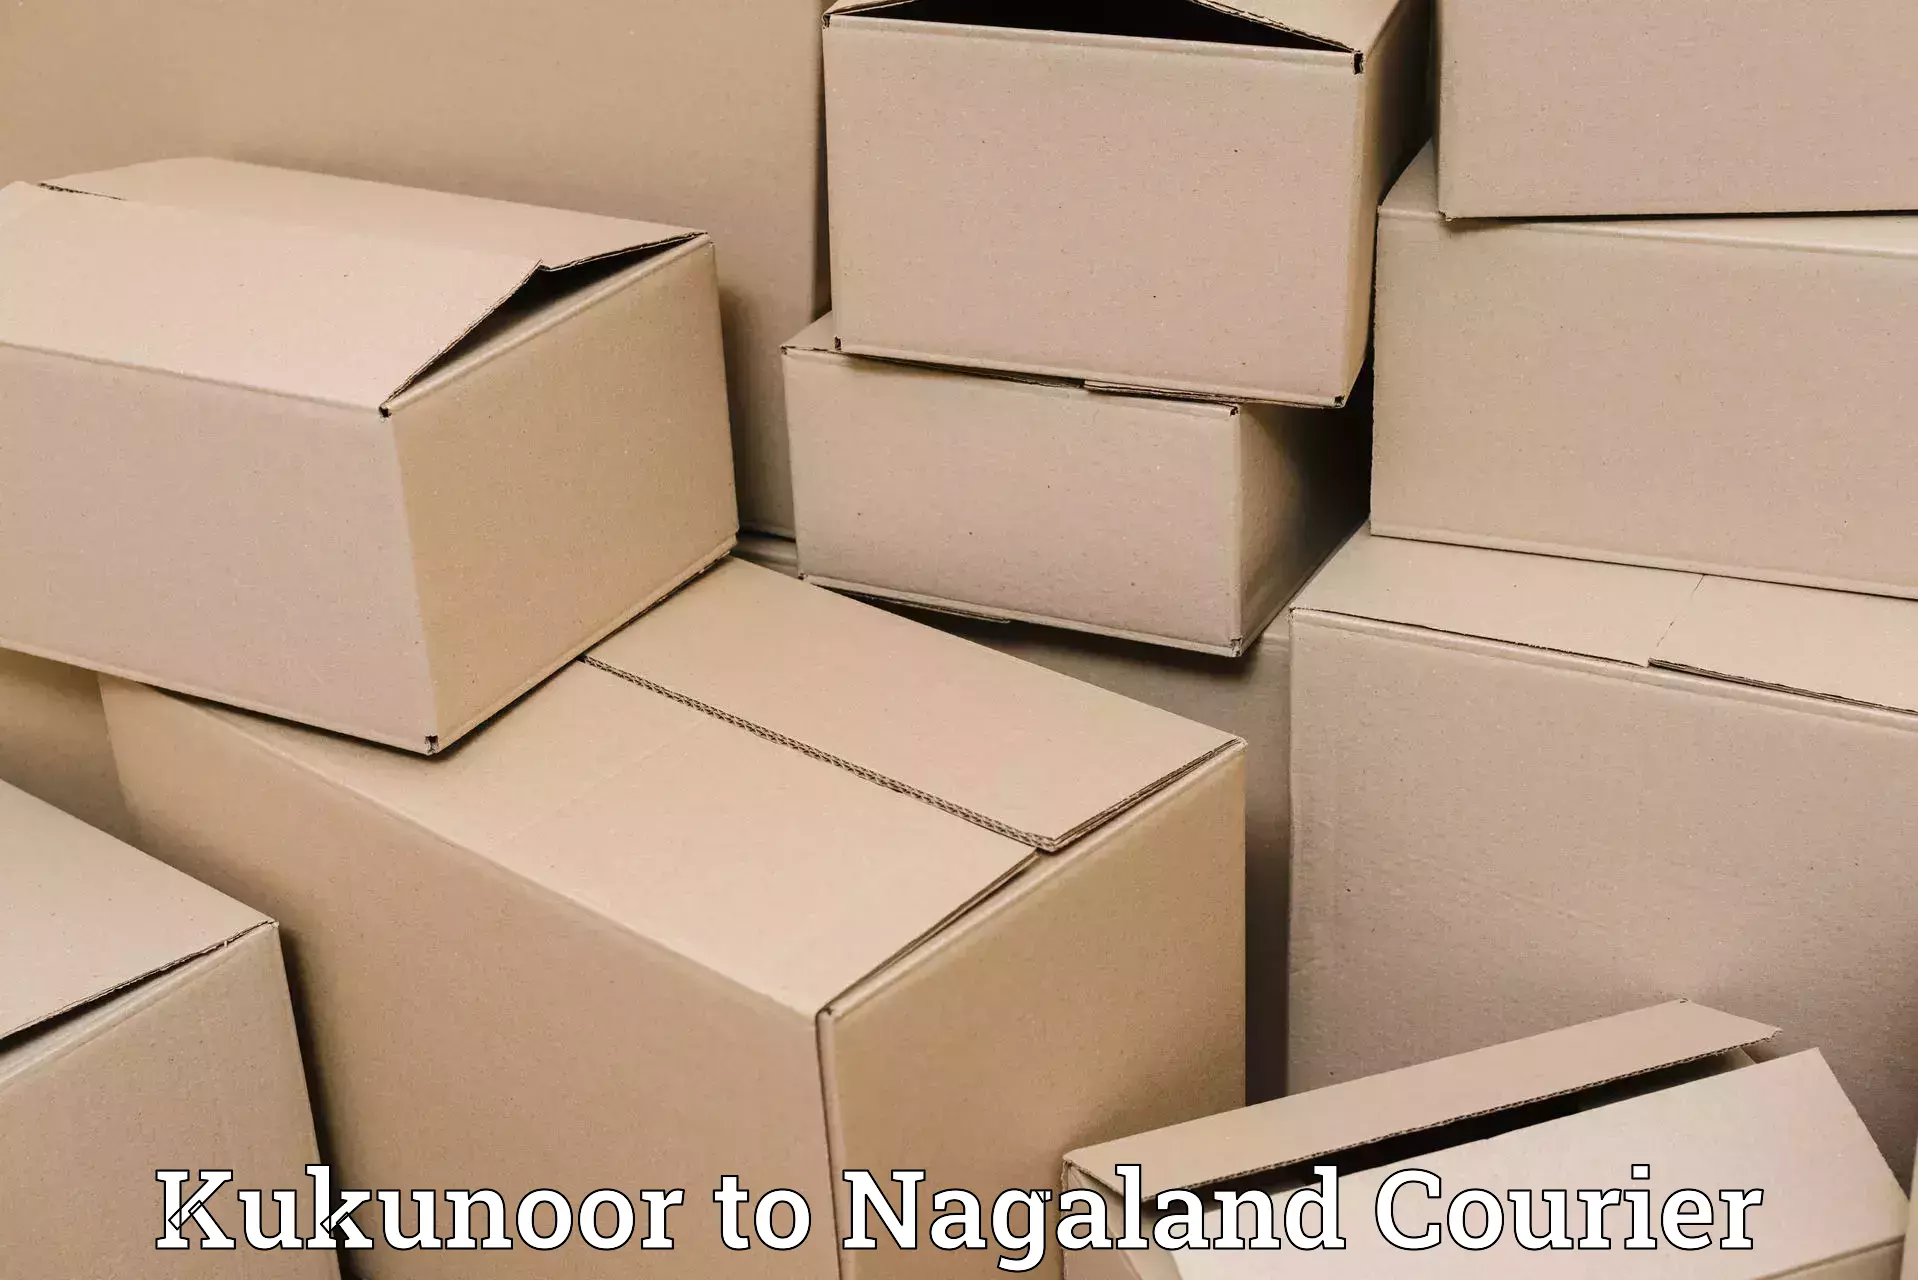 Urgent courier needs Kukunoor to Peren